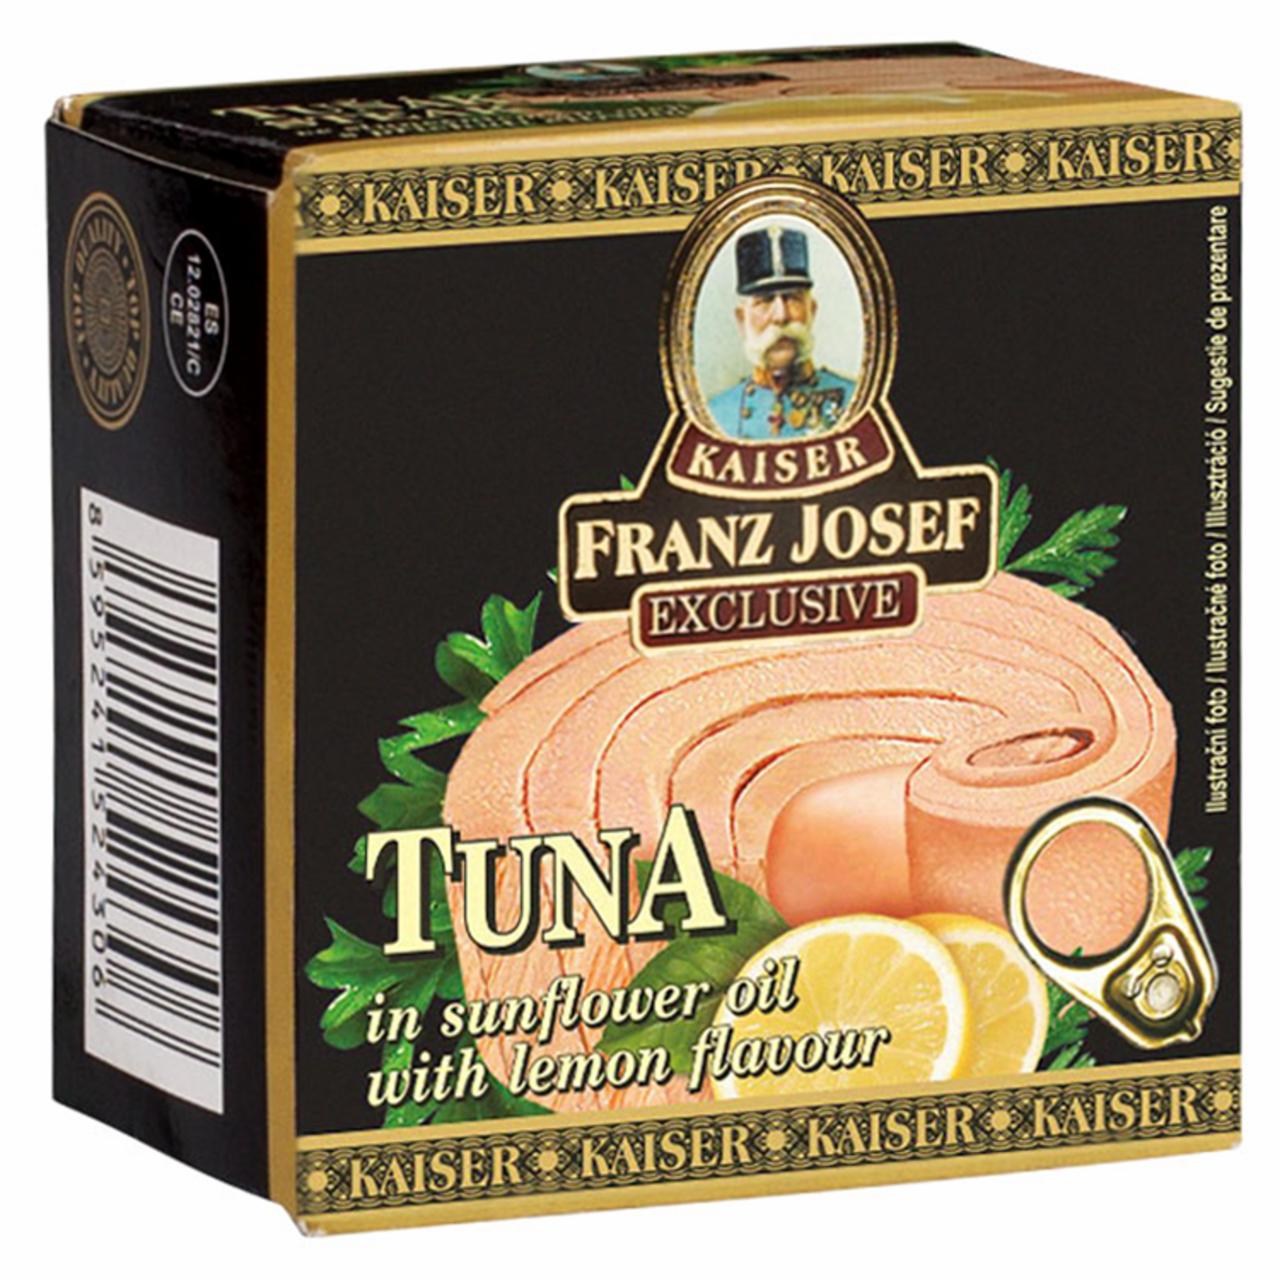 Képek - Kaiser Franz Josef Exclusive tonhal napraforgó olajban citrom ízesítéssel 80 g